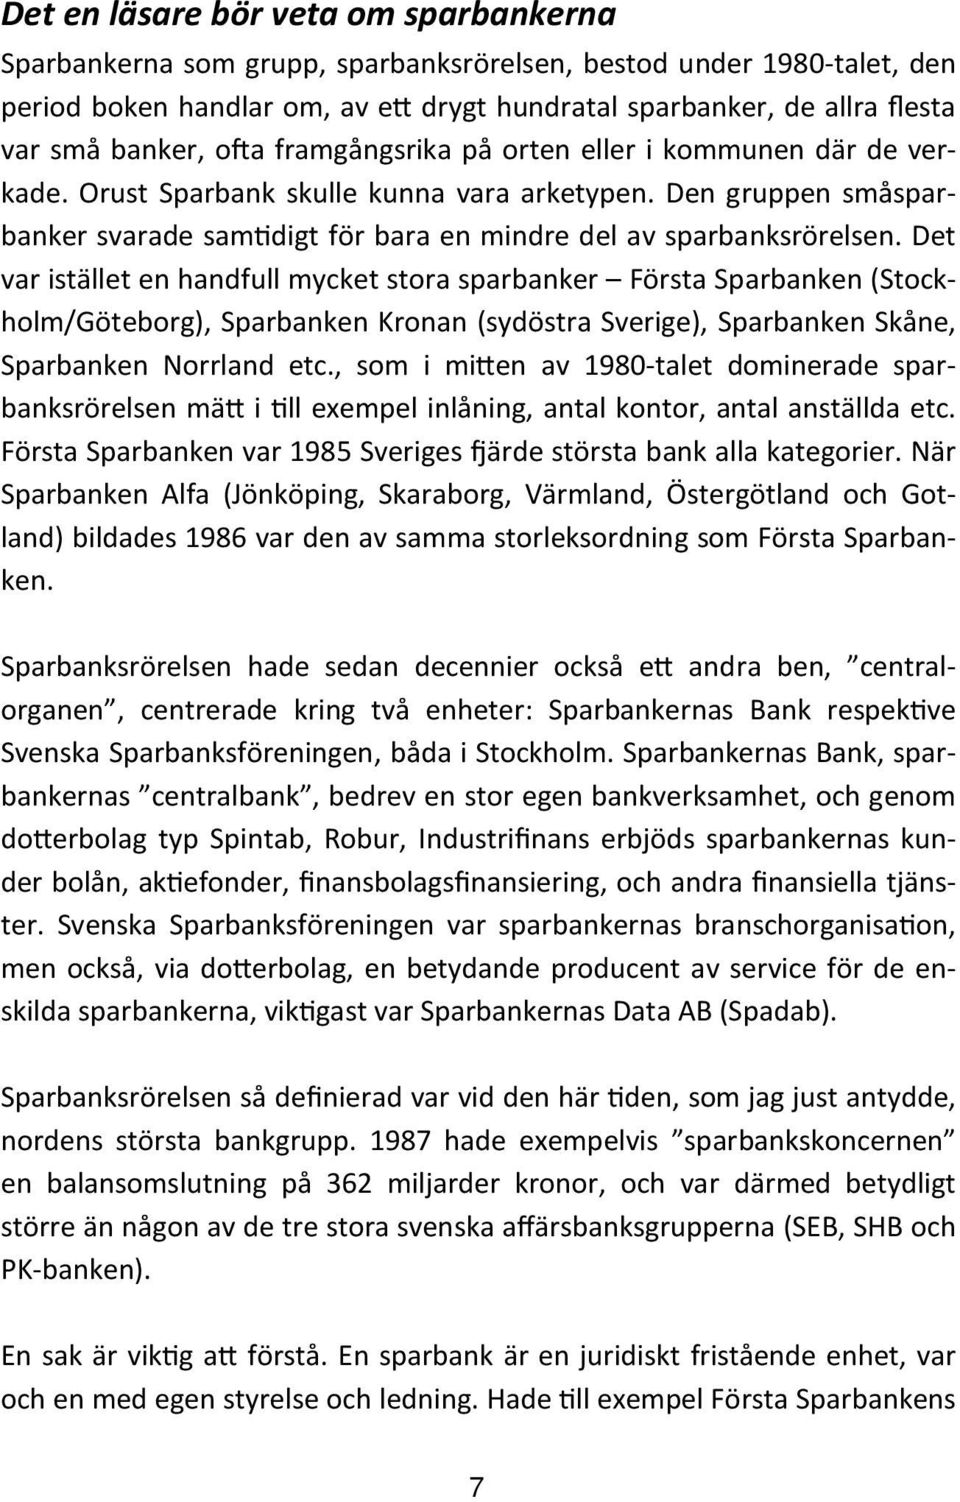 Det var istället en handfull mycket stora sparbanker Första Sparbanken (Stockholm/Göteborg), Sparbanken Kronan (sydöstra Sverige), Sparbanken Skåne, Sparbanken Norrland etc.